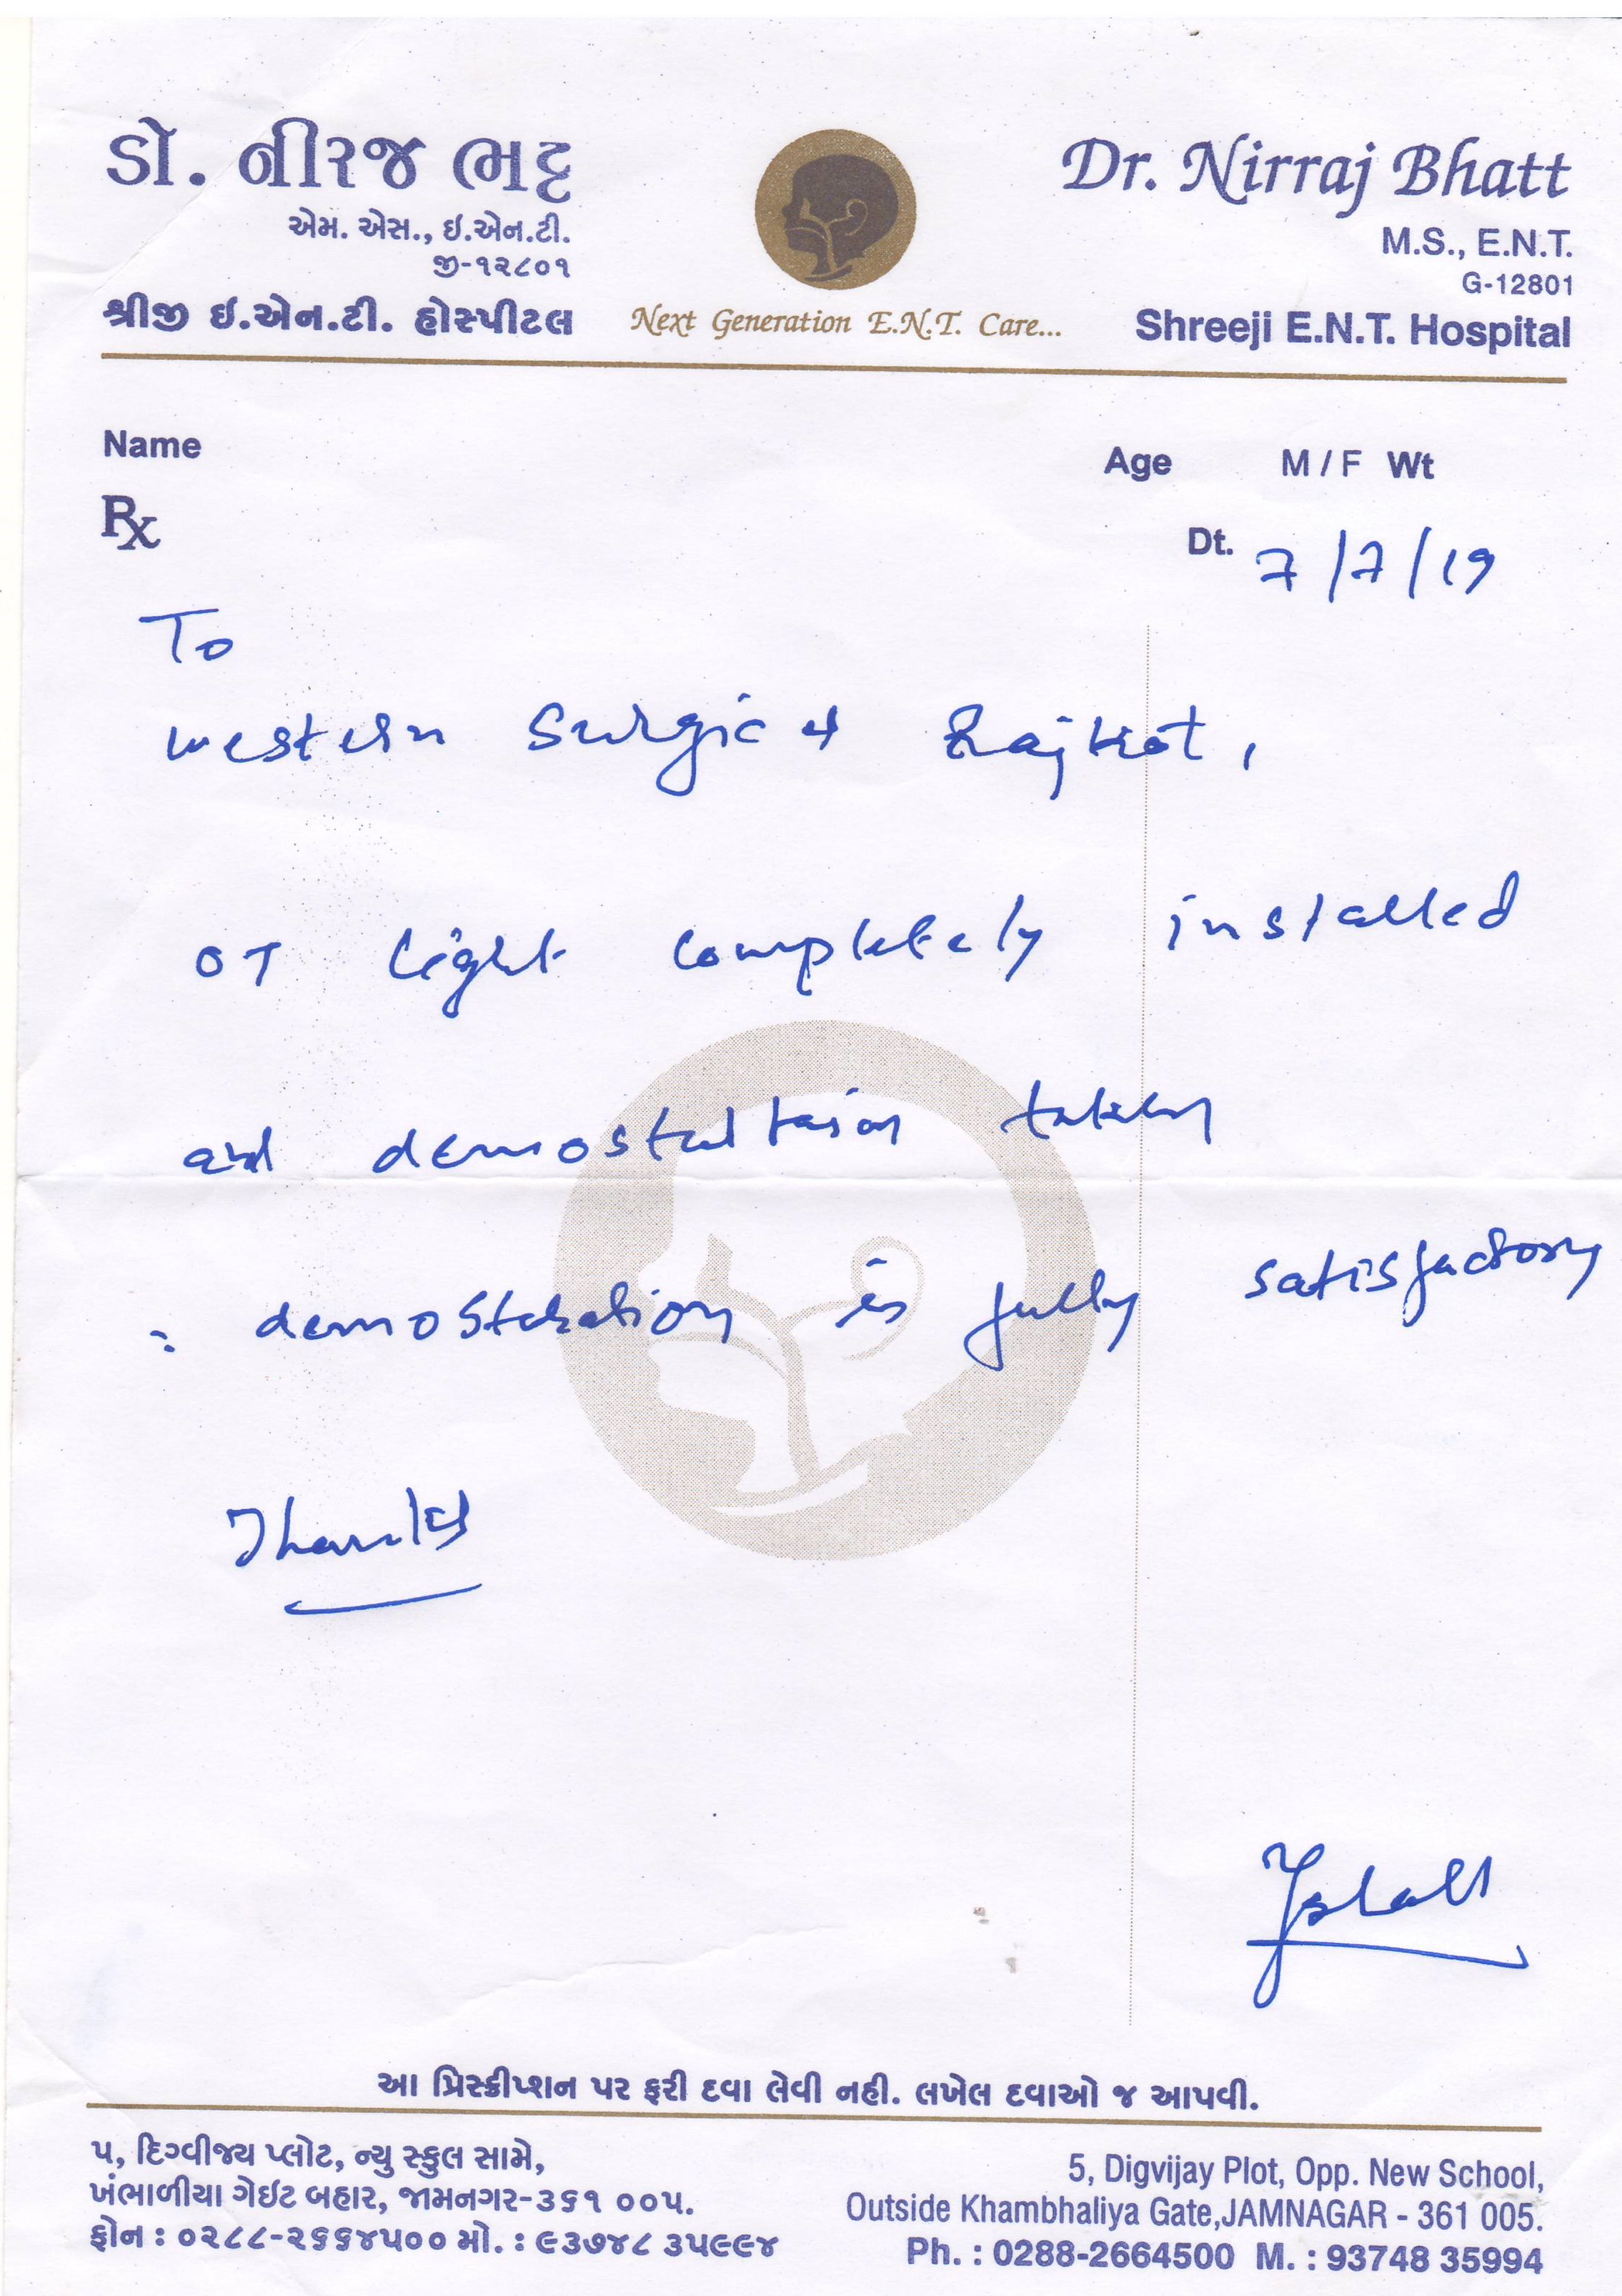 Shree ENT Hospital - Dr. Niraj Bhatt - Jamnagar 